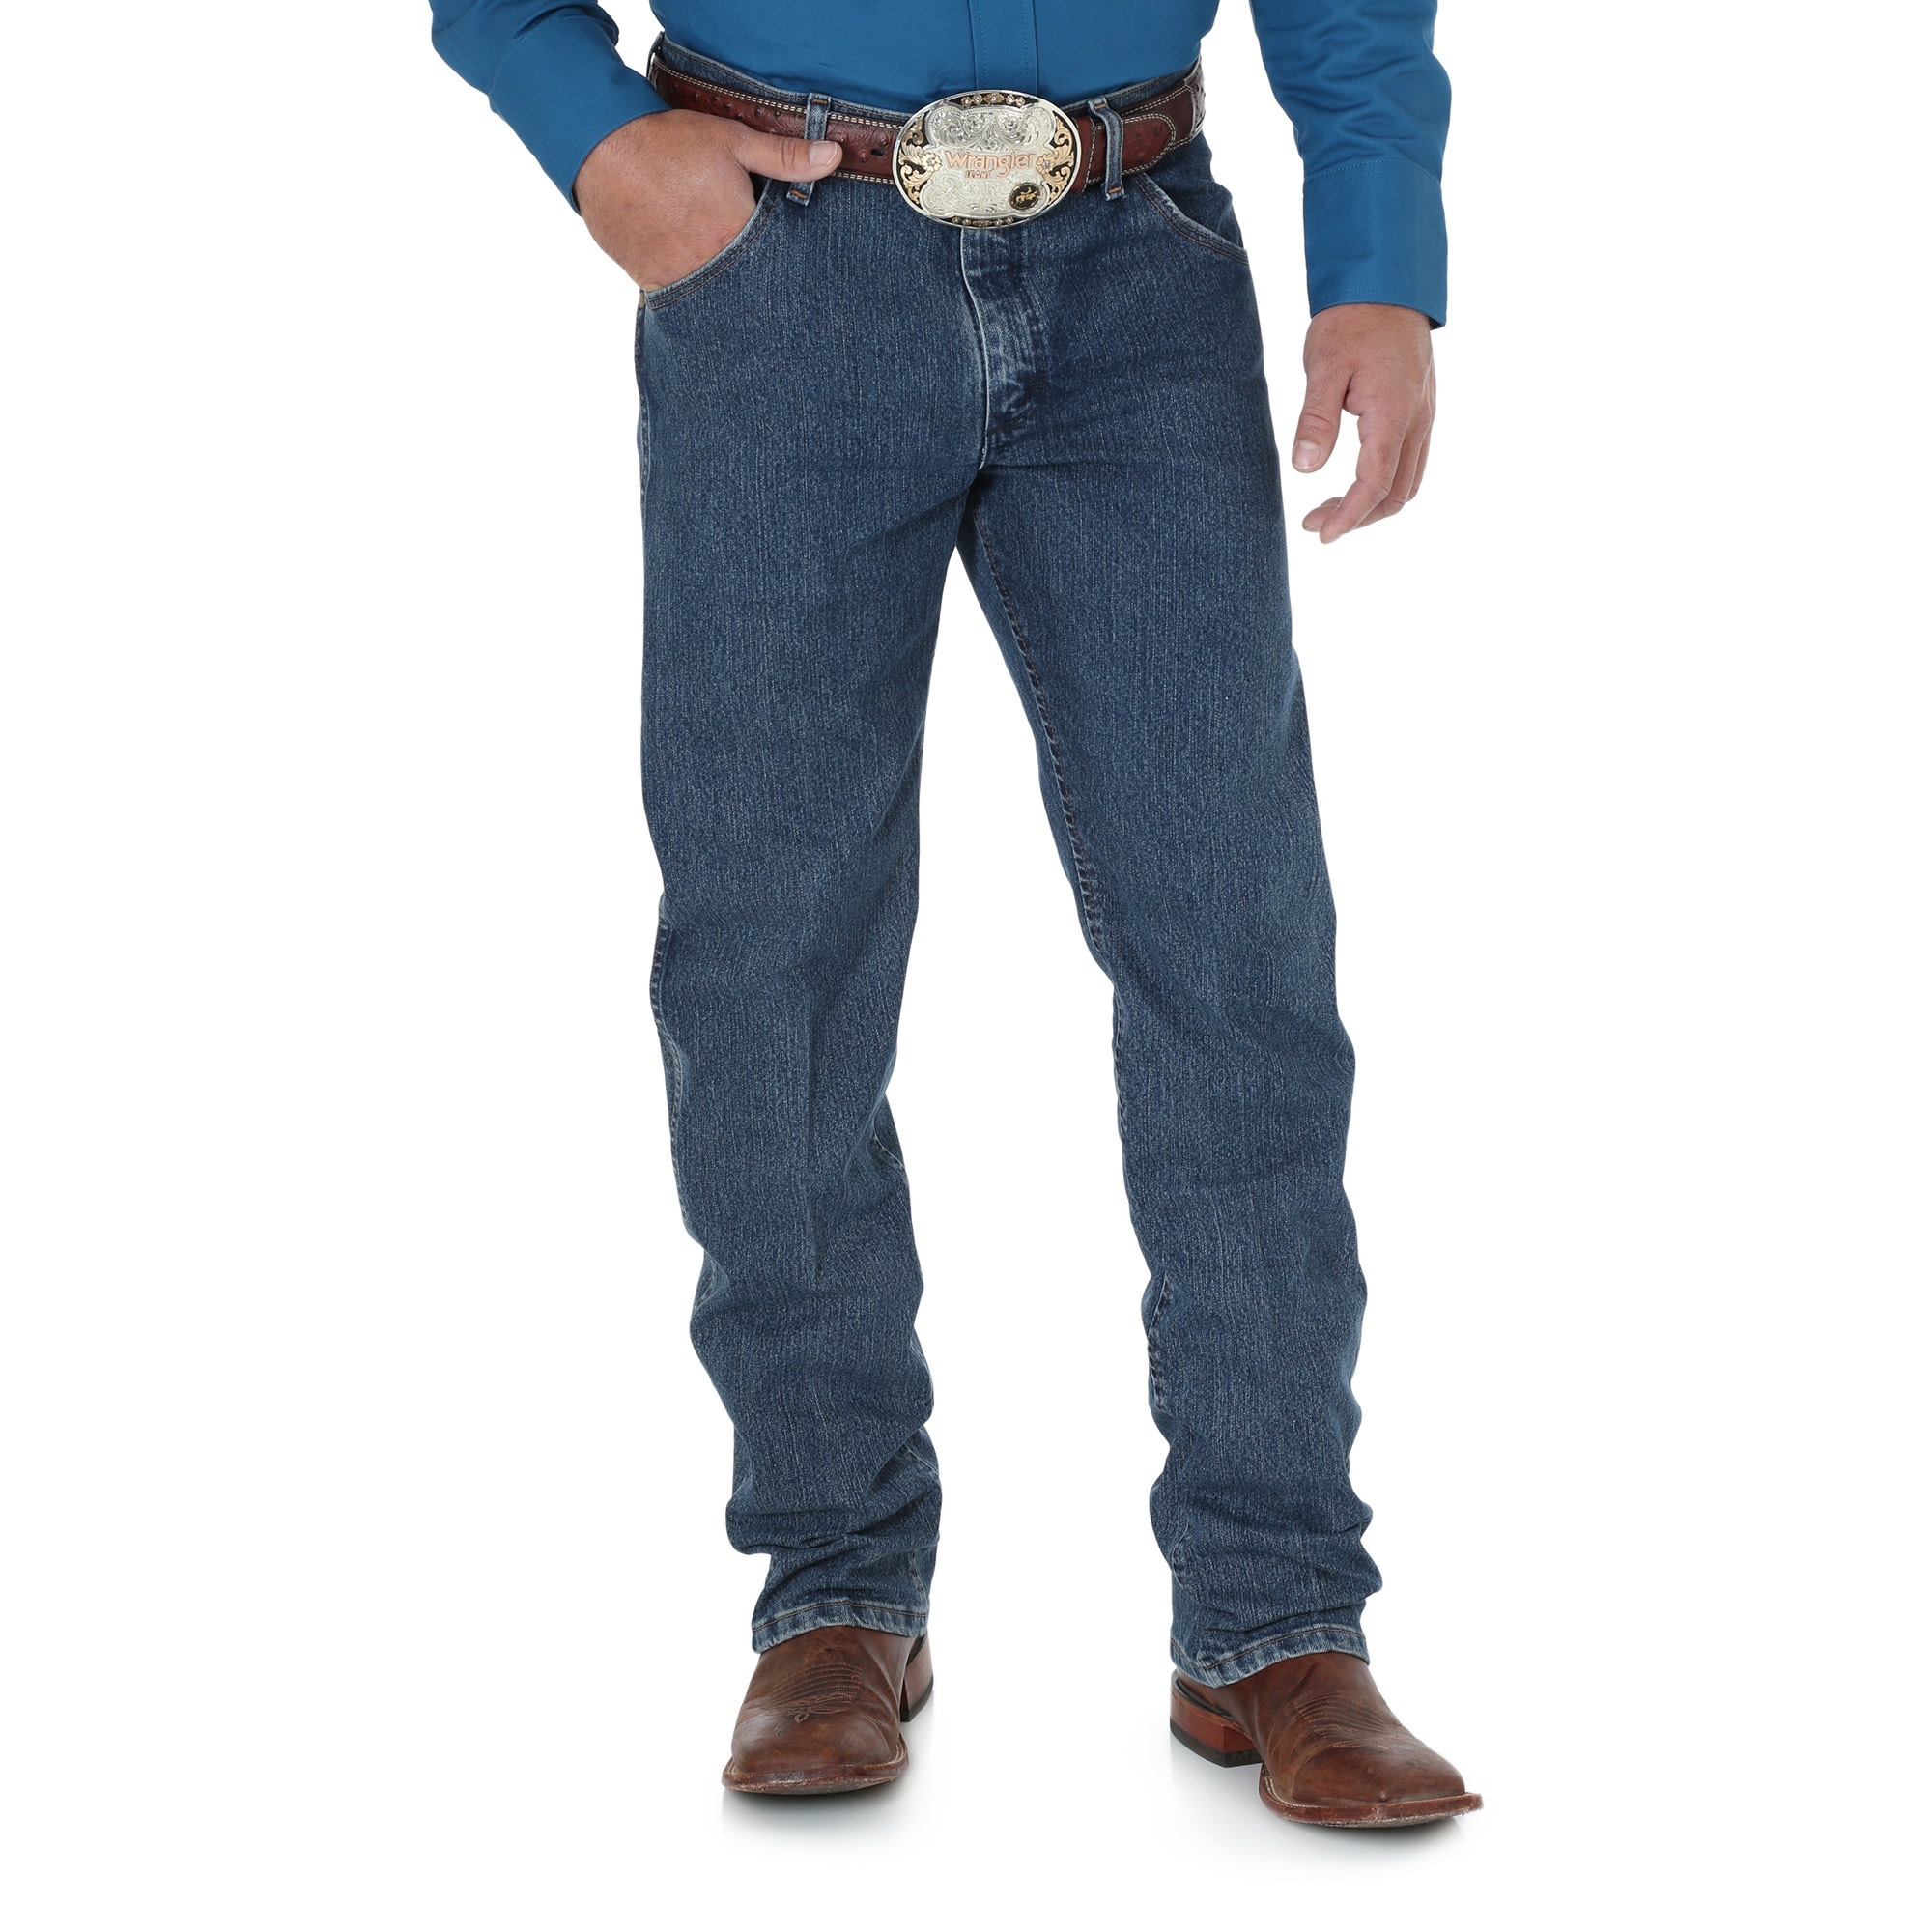 Premium Performance Advanced Comfort Cowboy Cut Regular Fit Jeans -  Frontier Western Shop